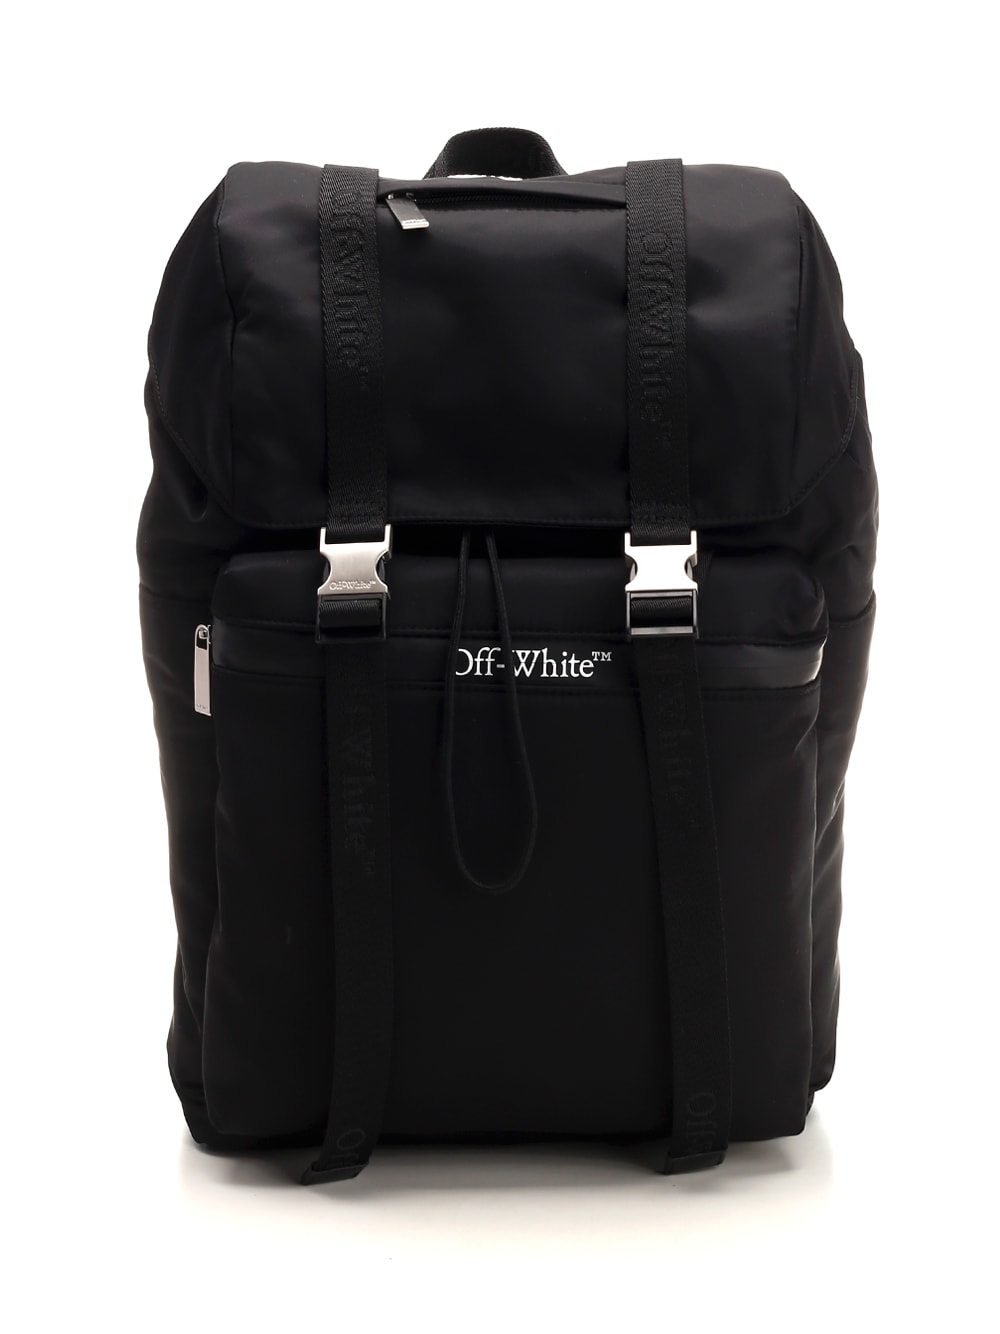 Off-white Black Nylon Backpack